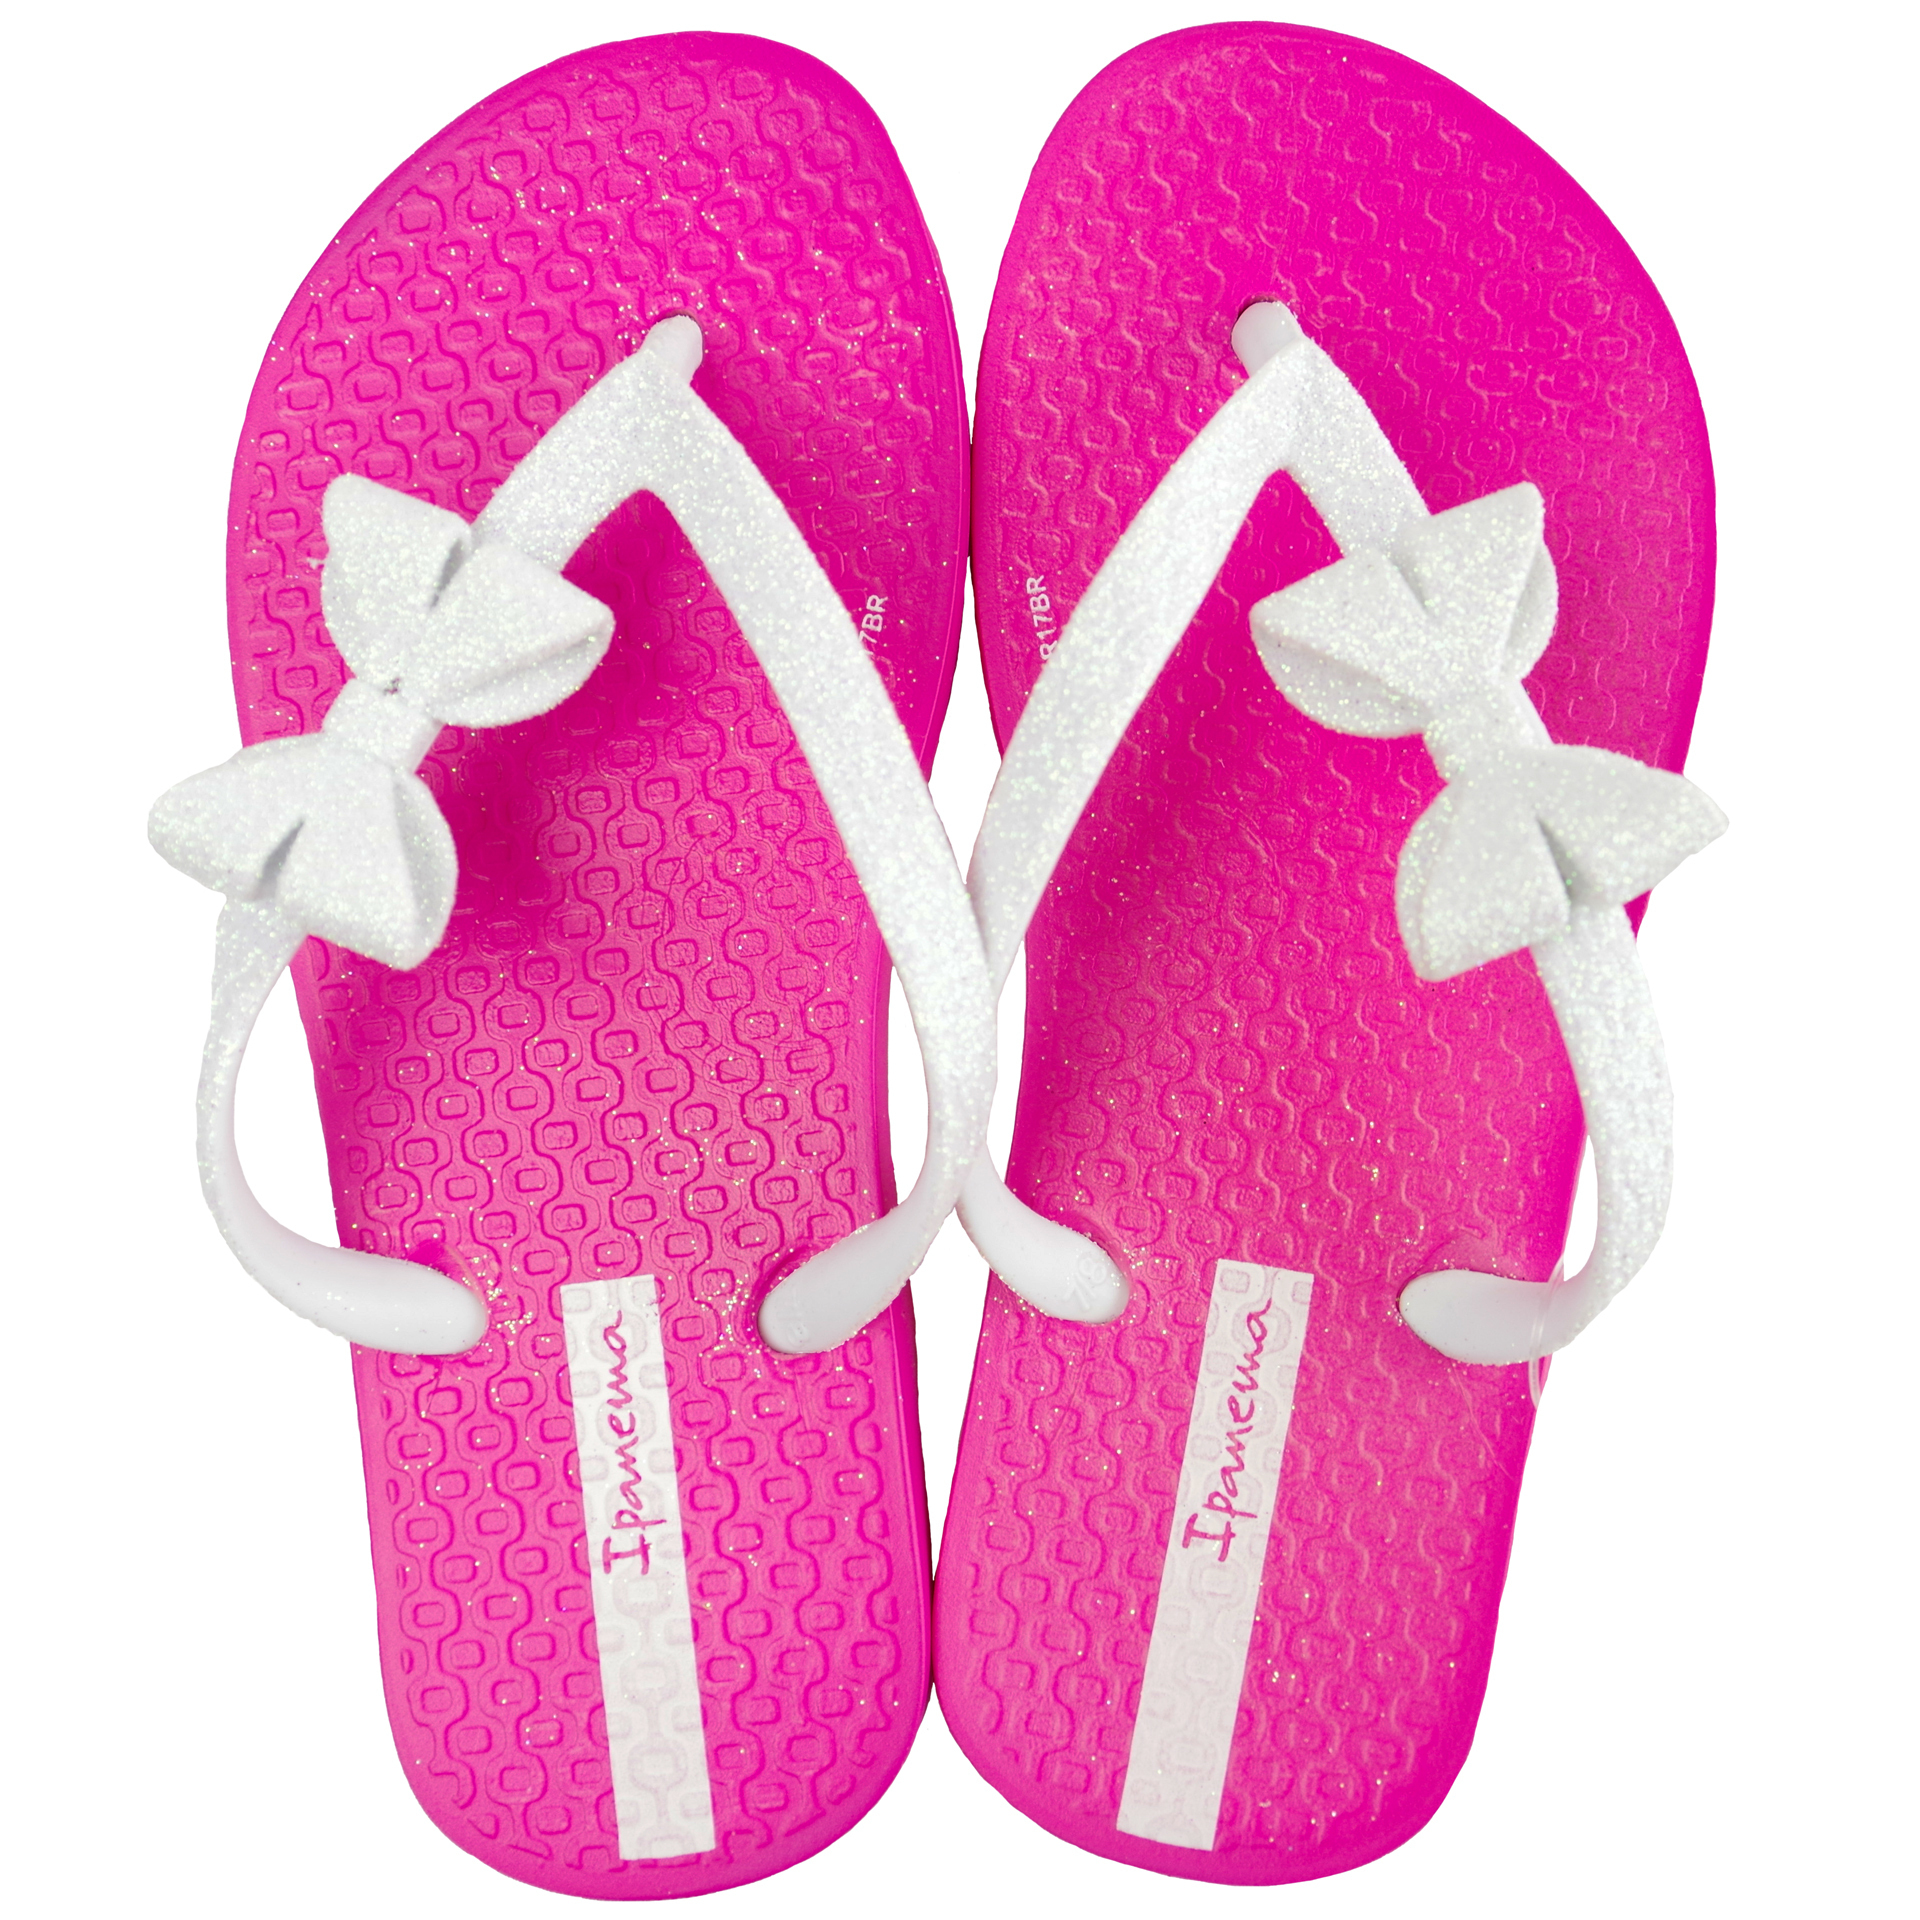 Пляжная обувь для девочки - шлепки детские ipanema (1517) 25-36 размеры, цвет Розовый – Sole Kids